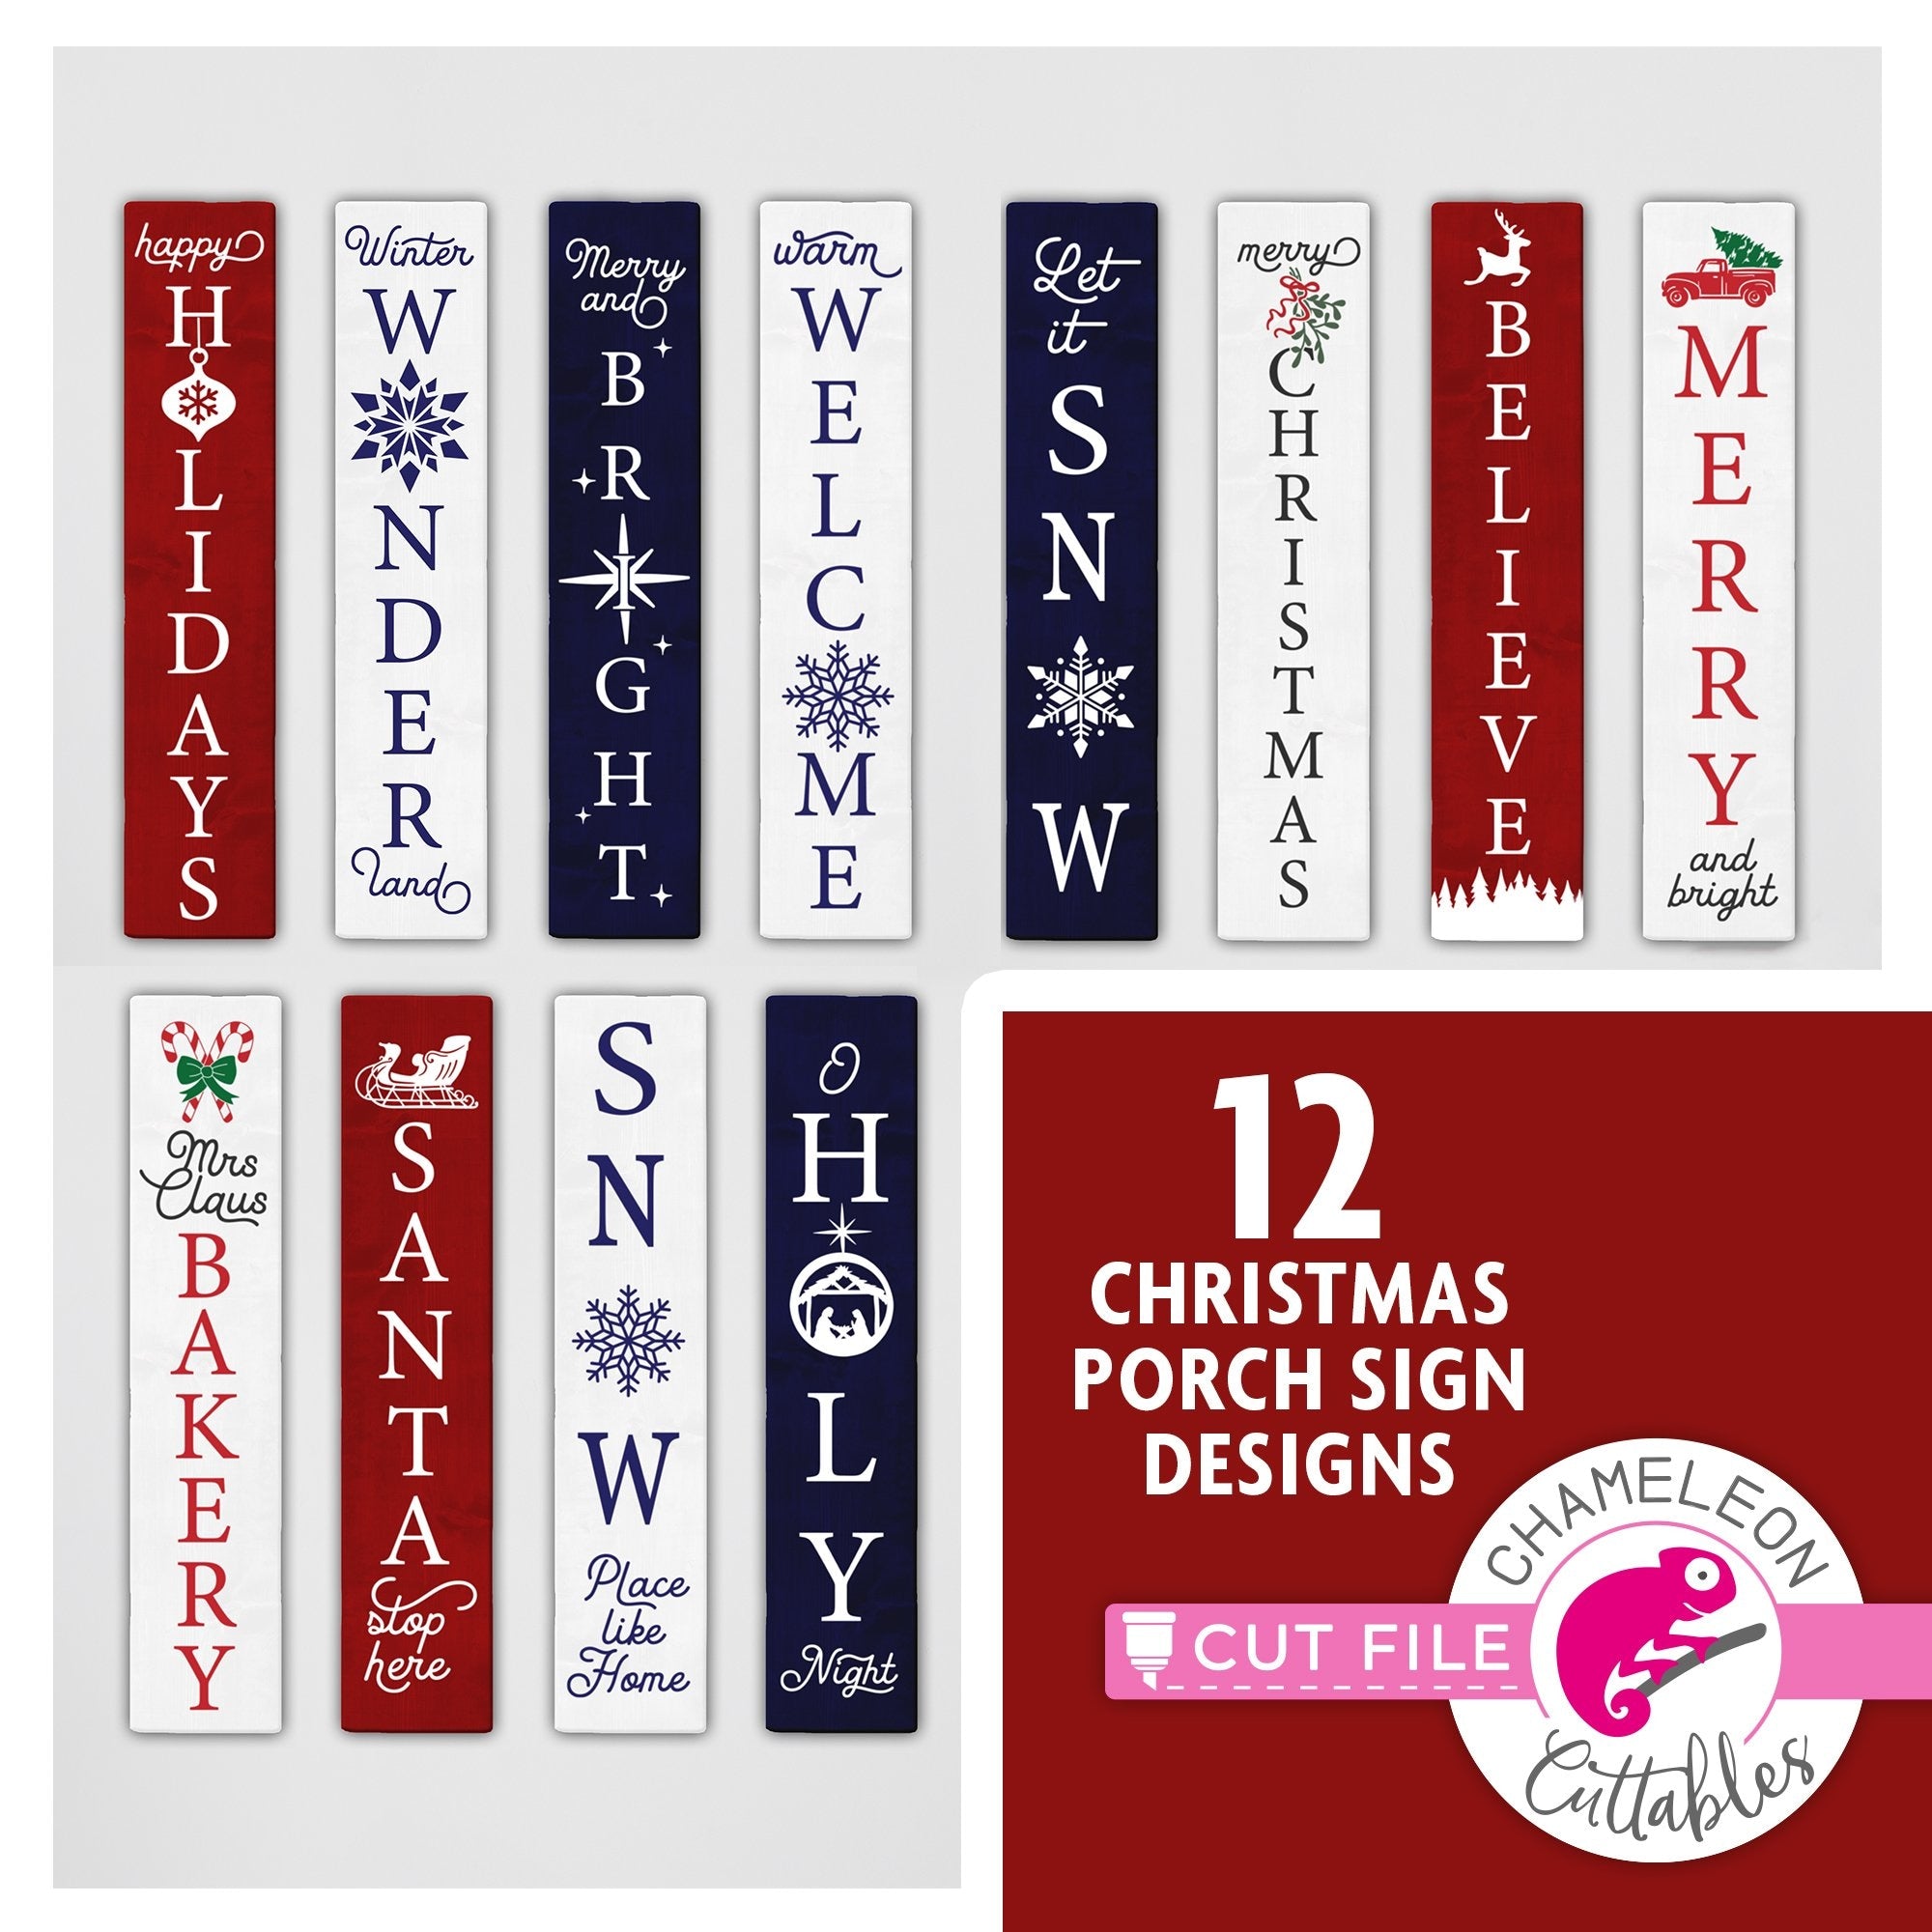 Download 12 Christmas Porch Sign Designs Bundle Svg Png Dxf Chameleon Cuttables Llc Chameleon Cuttables Llc